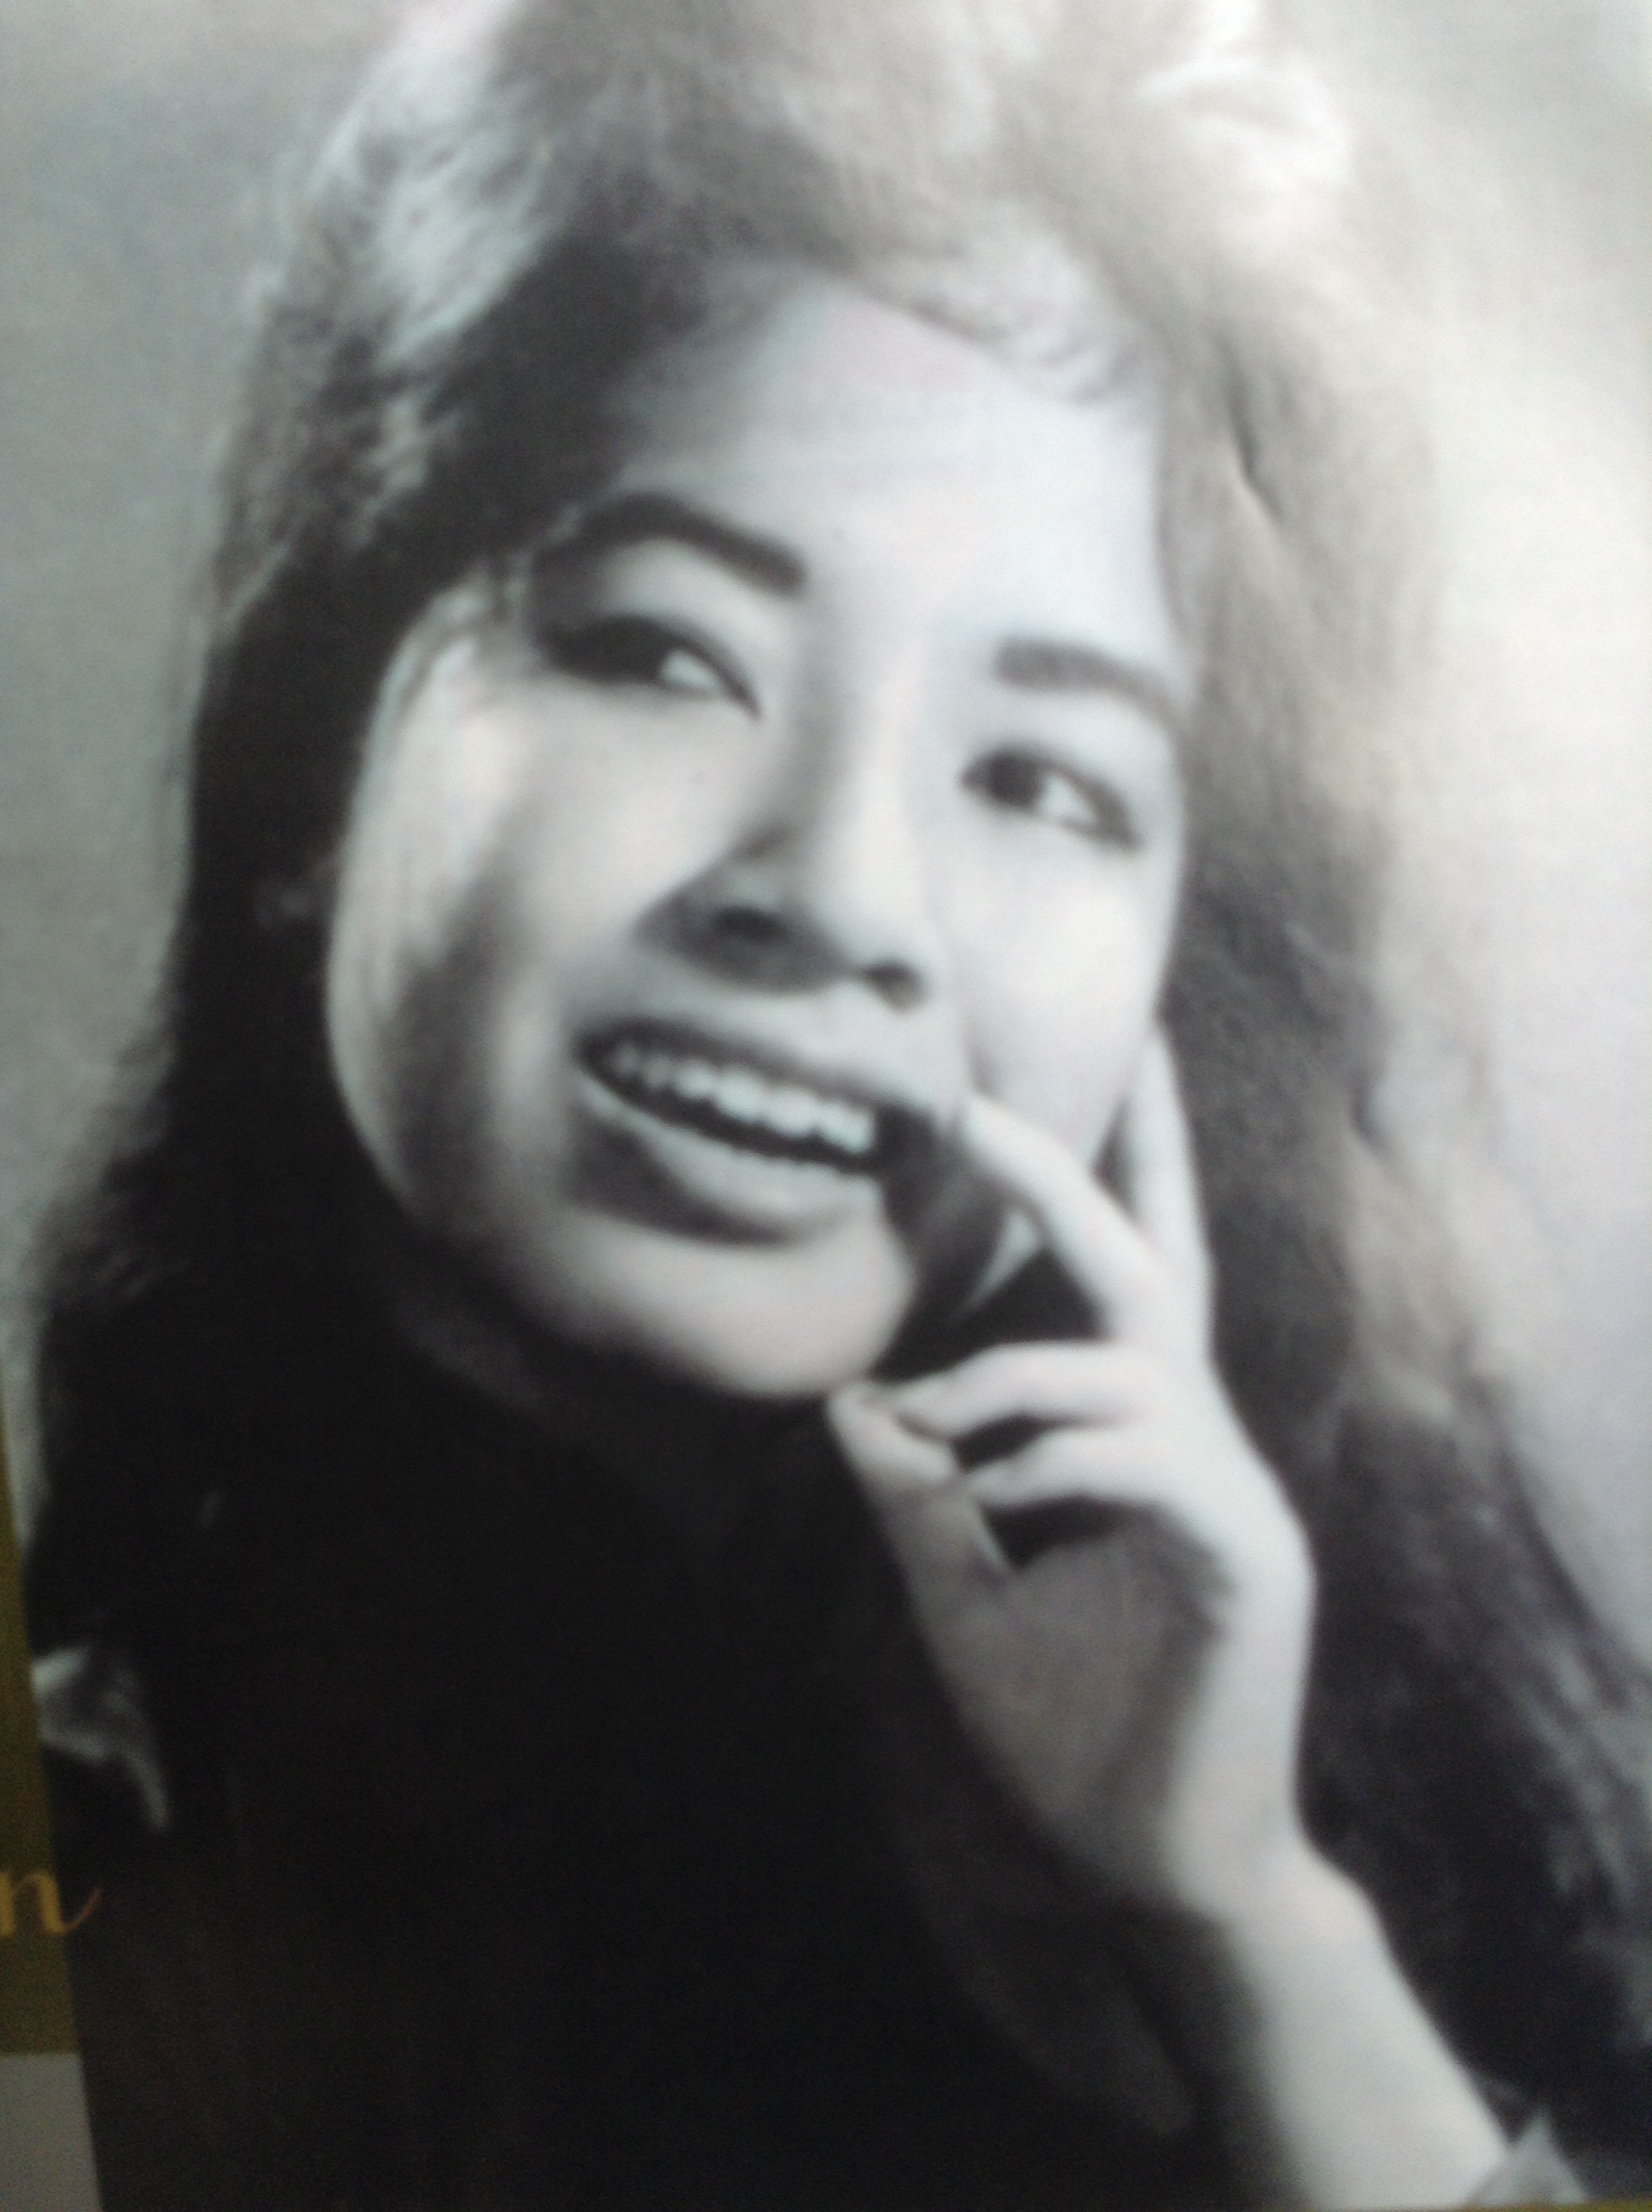 Phụ nữ Việt Nam quyến rũ và thanh lịch với hình ảnh đen trắng tuyệt đẹp. Ghi lại khoảnh khắc nên thơ và đầy cảm xúc trong cuộc đời, với những hình ảnh đặc sắc được thiết kế đầy tinh tế.